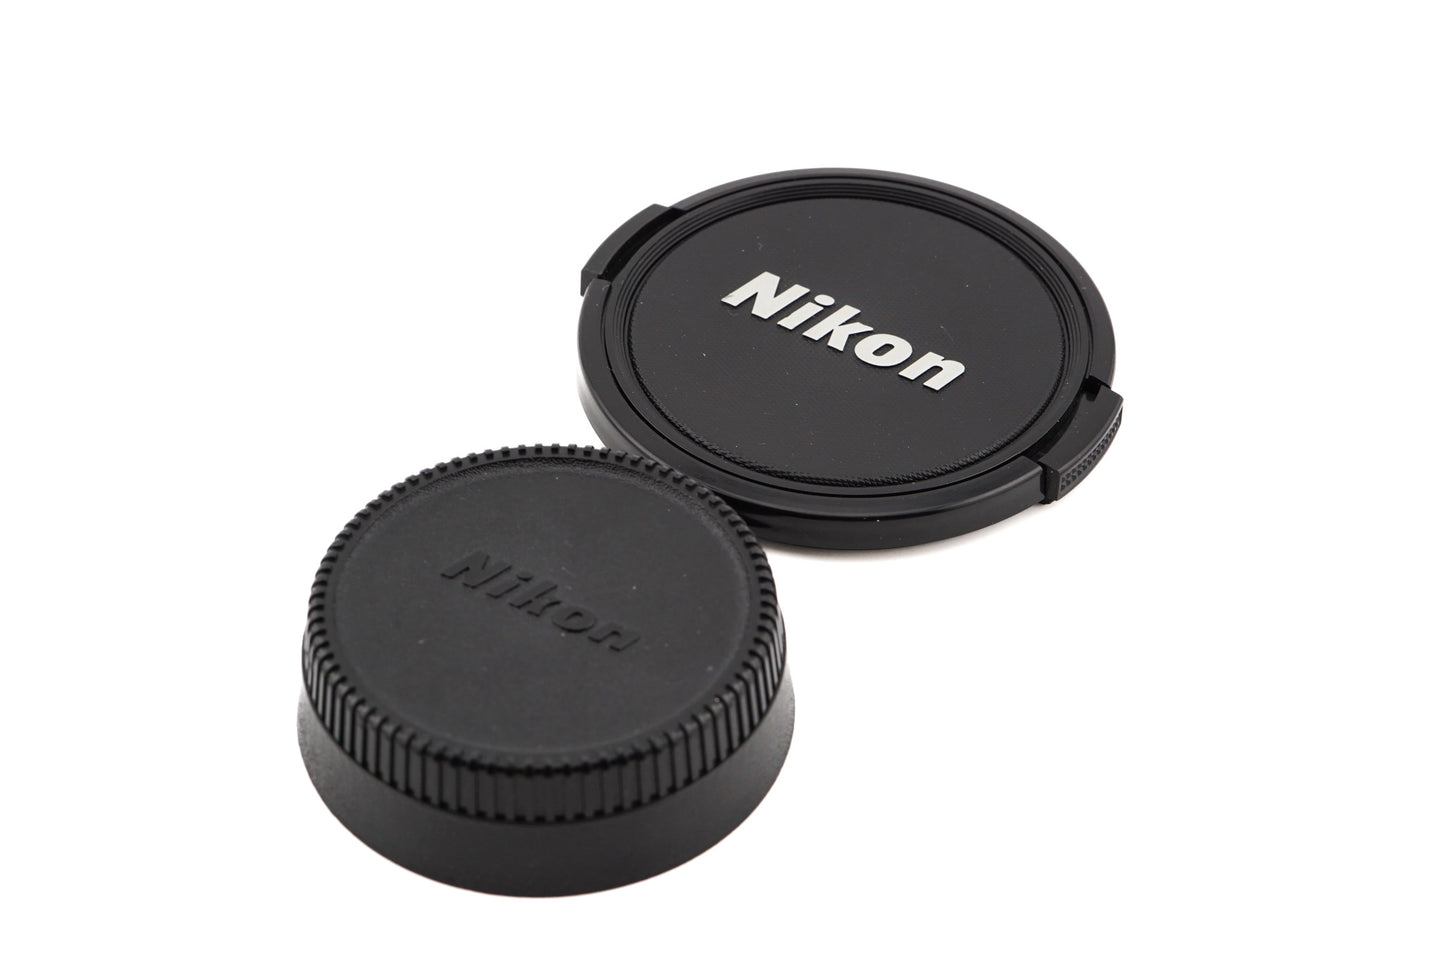 Nikon 85mm f1.8 D AF Nikkor